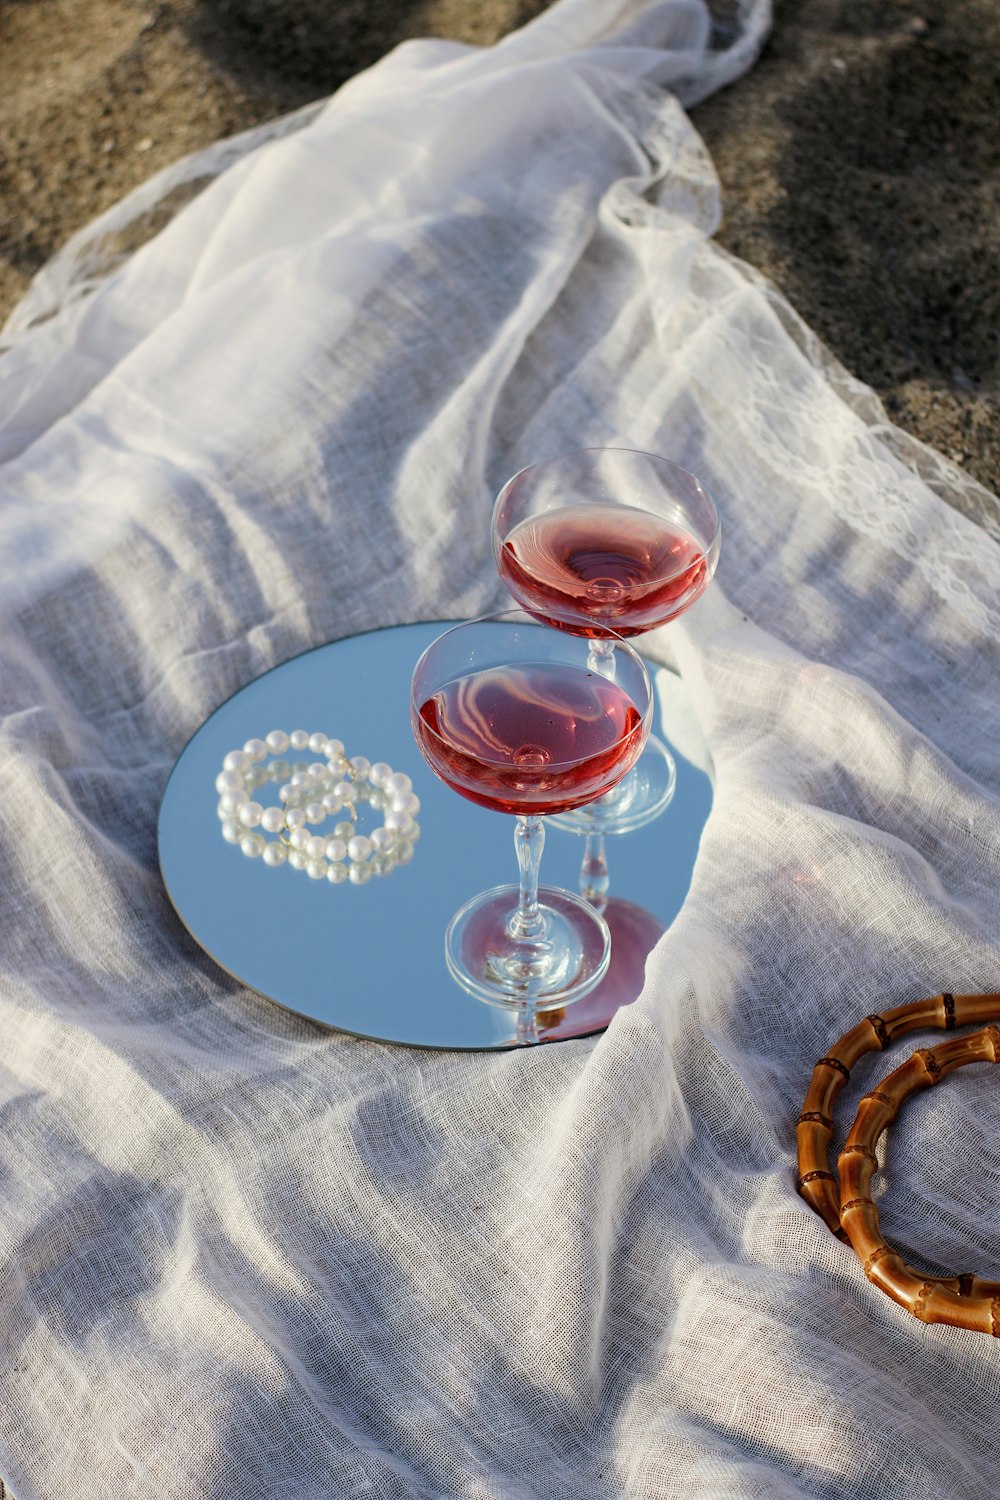 Copa de vino transparente sobre plato redondo de cerámica azul y blanco